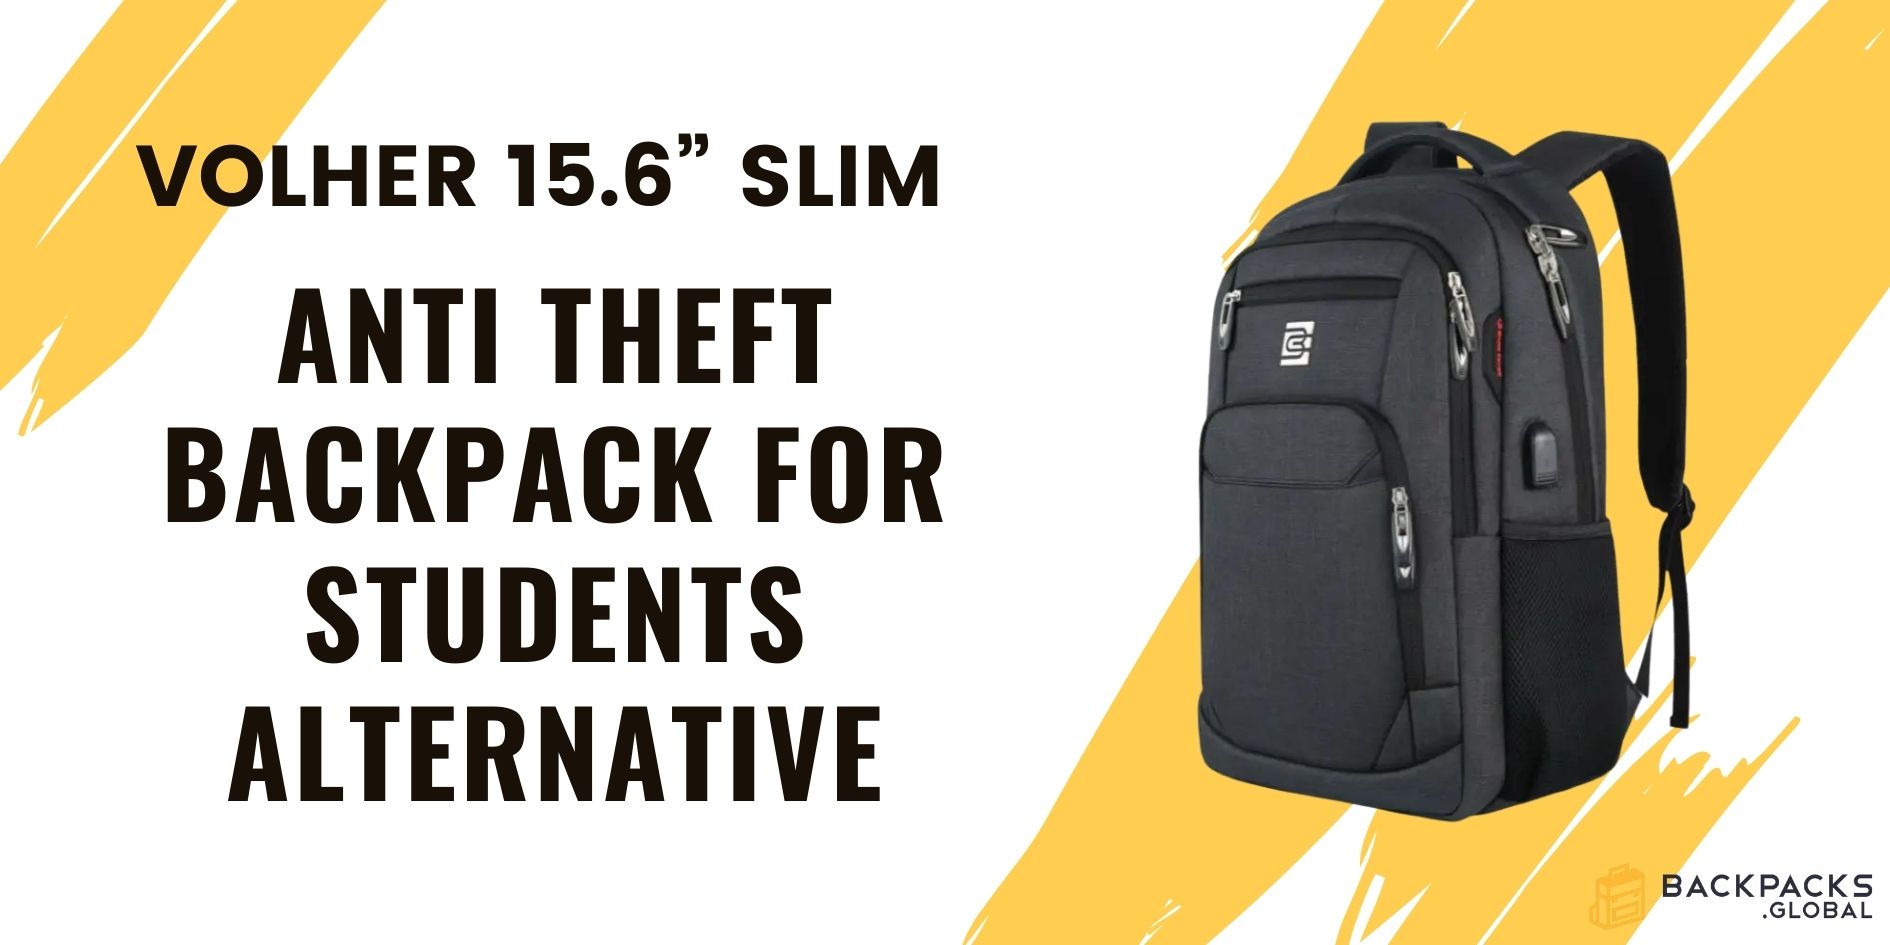 Volher 15.6” Slim Backpack